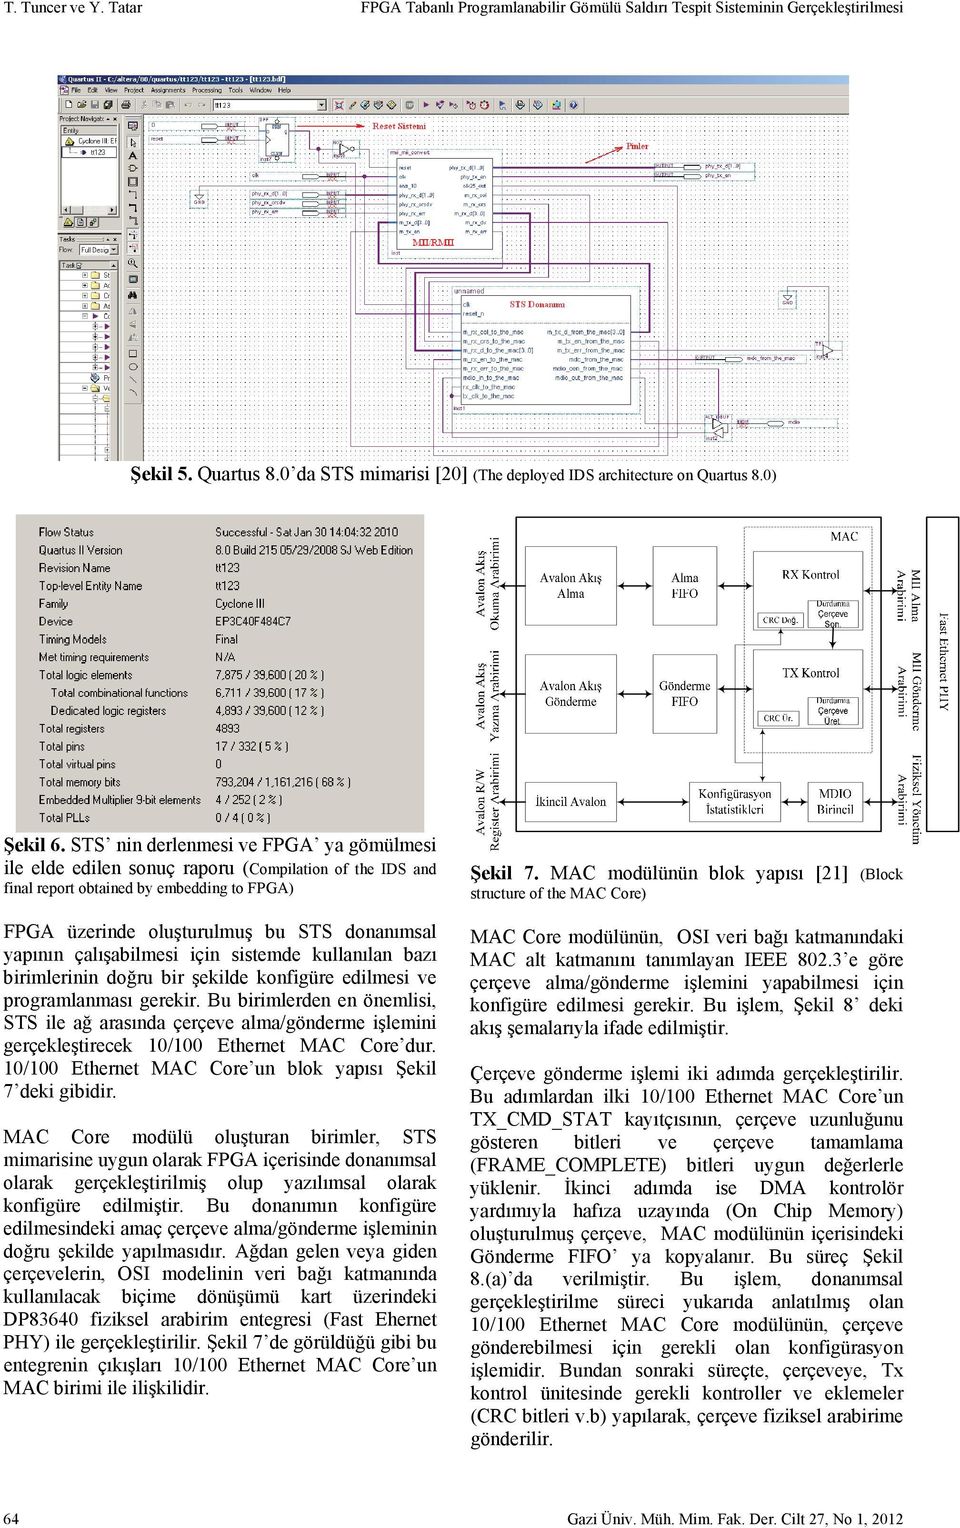 STS nin derlenmesi ve FPGA ya gömülmesi ile elde edilen sonuç raporu (Compilation of the IDS and final report obtained by embedding to FPGA) FPGA üzerinde oluşturulmuş bu STS donanımsal yapının